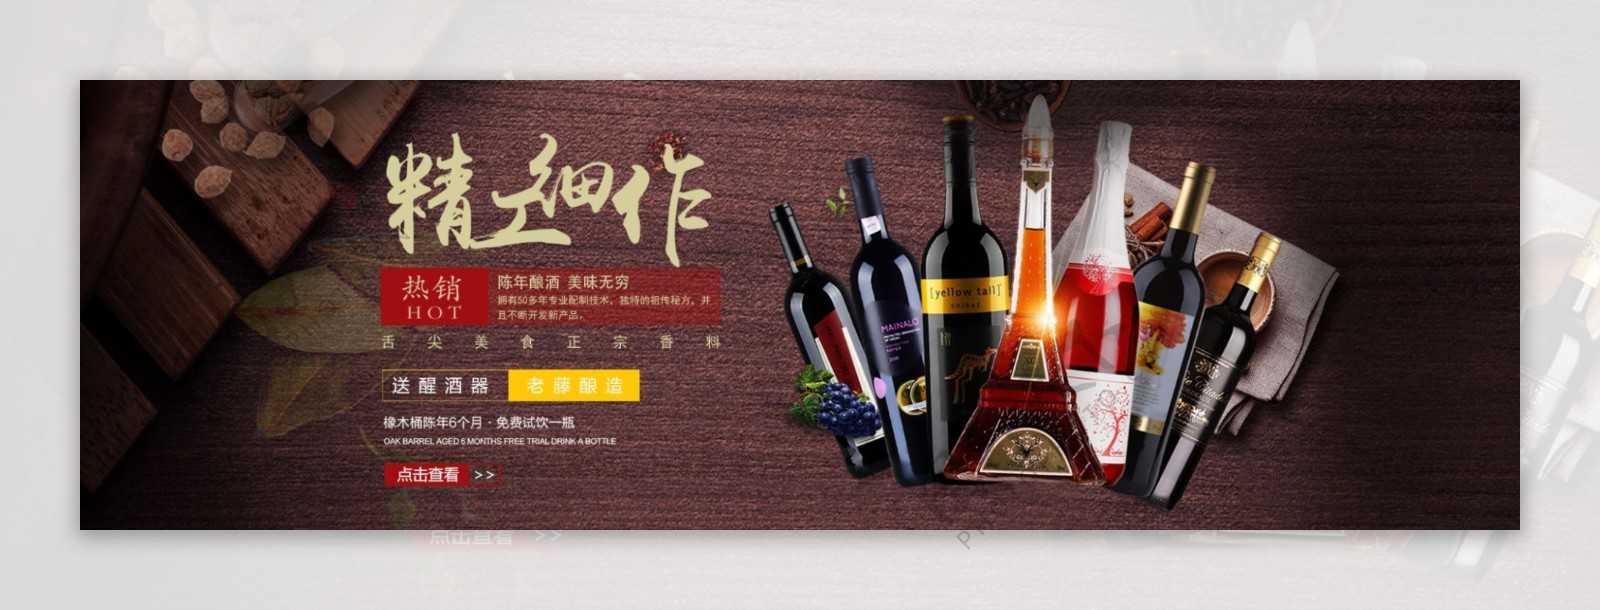 酷炫漂亮的葡萄酒红酒banner